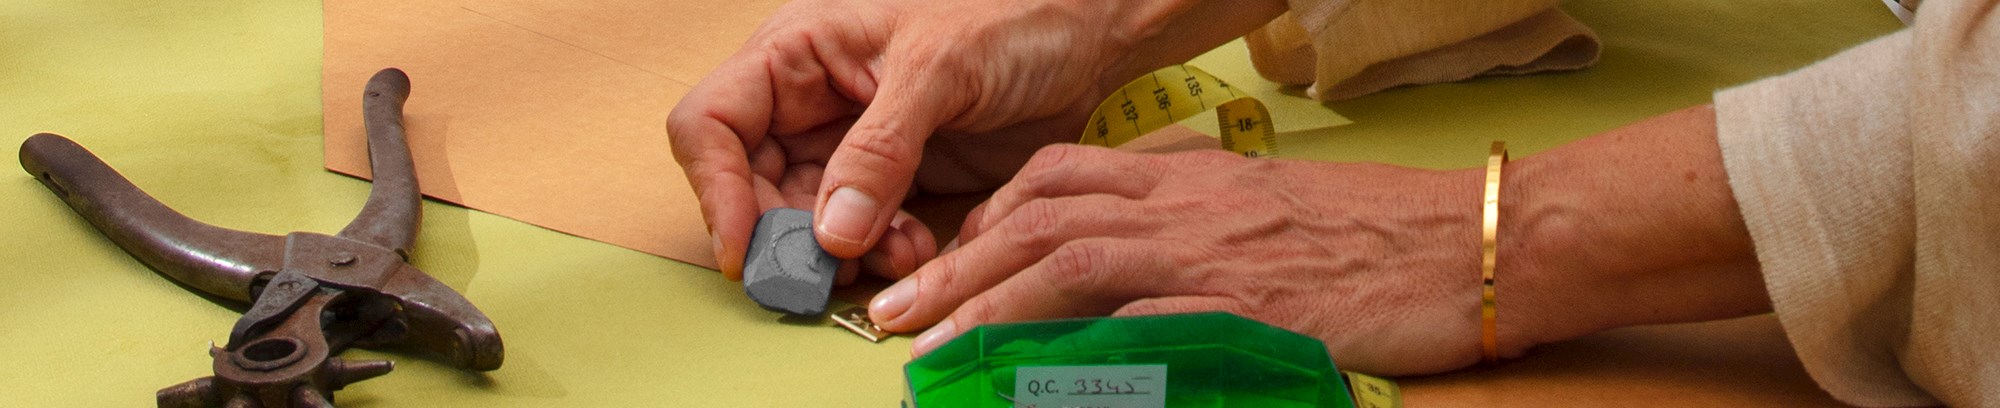 Kursist, der tegner en stencil/skabelon op på et stykke stof ved siden af en kasse med nåle, målebånd, saks, osv. på et bord